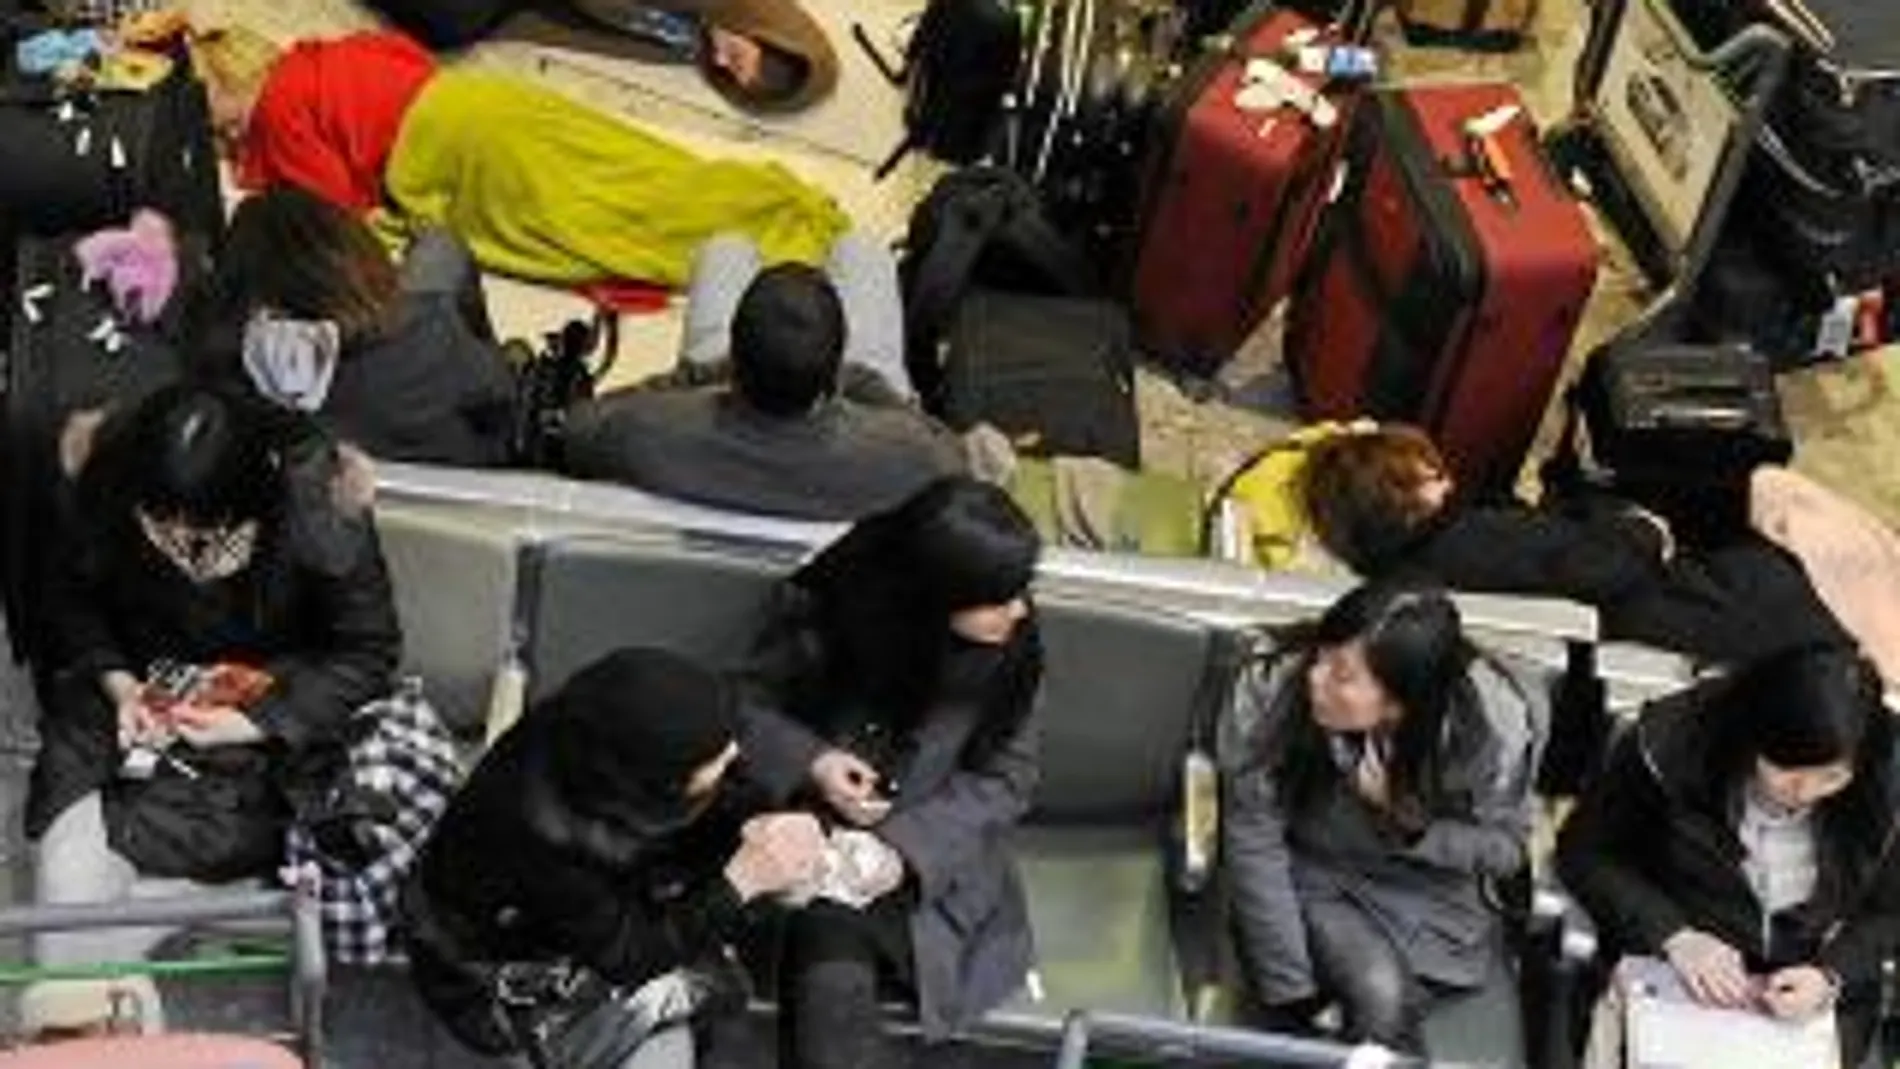 Miles de pasajeros esperan con su equipaje en la terminal 3 del aeropuerto londinense de Heathrow, el más afectado por el temporal